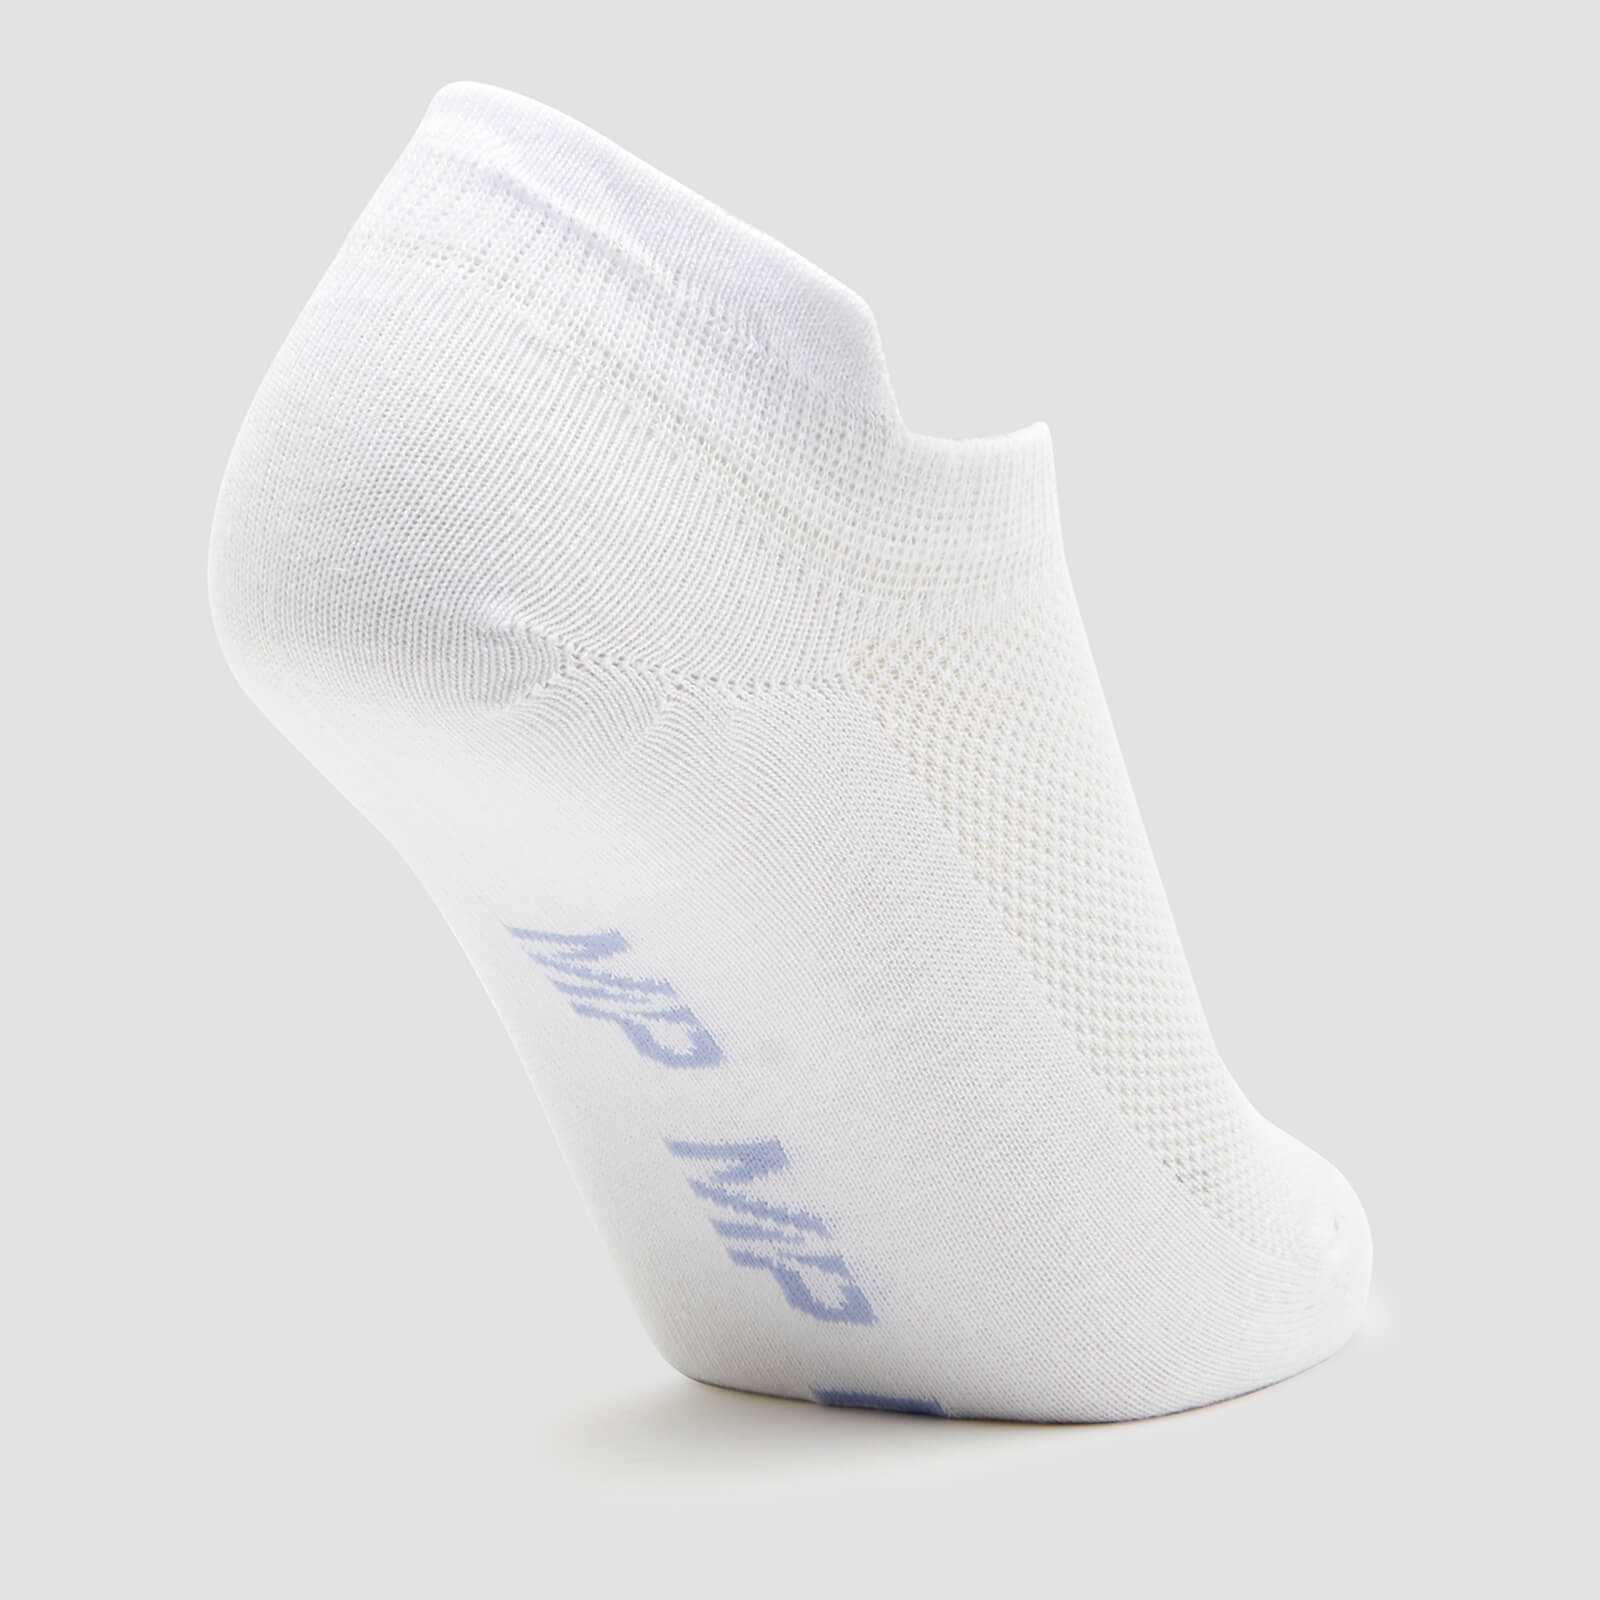 MP Women's Ankle Socks - White/Neon (3 Pack) - UK 7-9